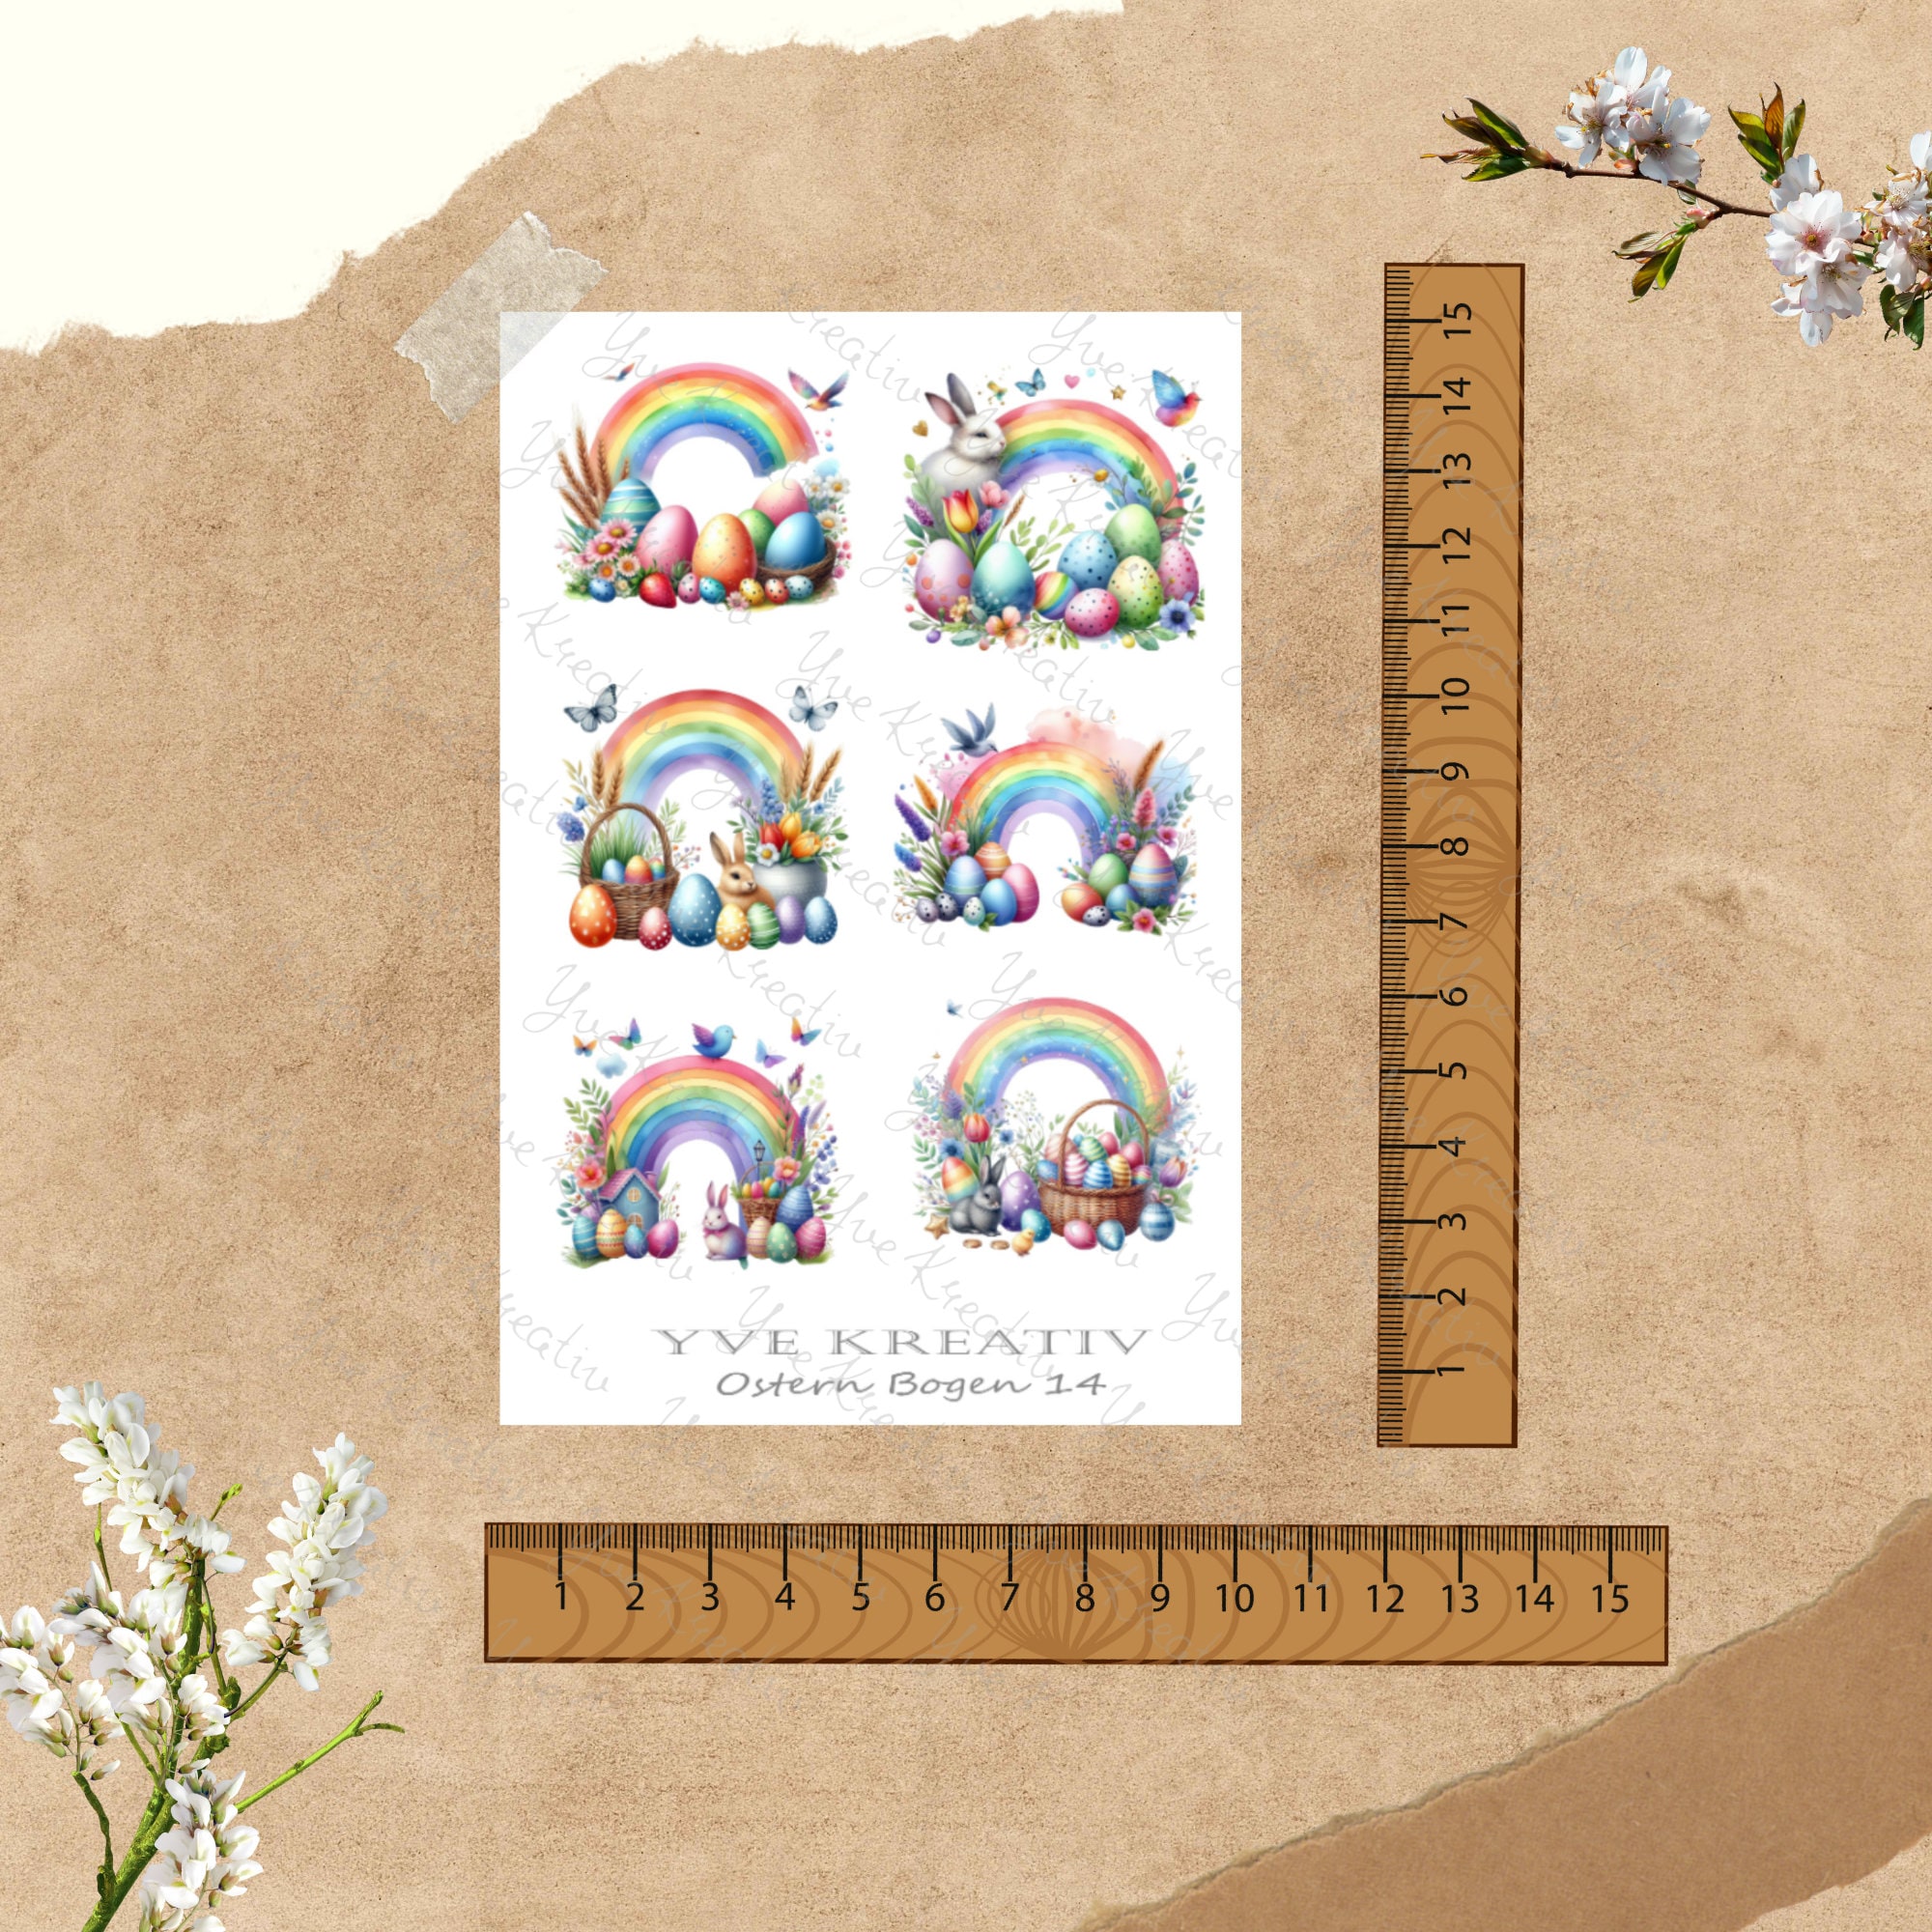 Sticker Bogen - Ostern Regenbogen Fehen | Sticker Set - Journal Sticker - Aufkleber 4 Bögen zur Auswahl in Weiß oder Transparent